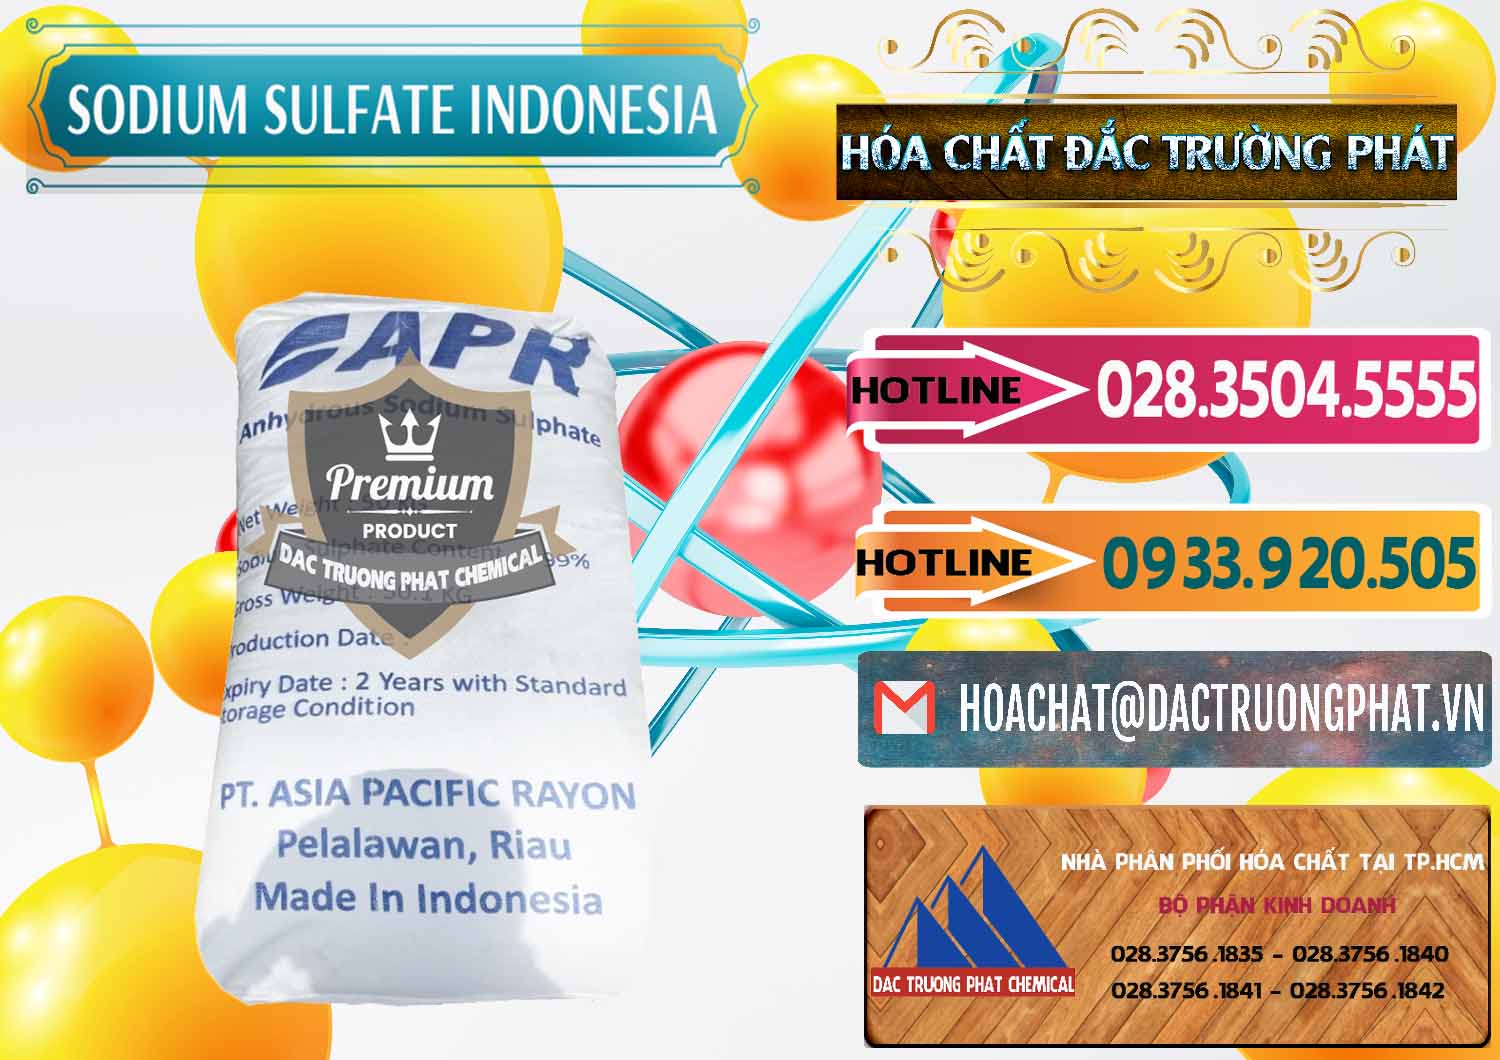 Chuyên bán - cung ứng Sodium Sulphate - Muối Sunfat Na2SO4 APR Indonesia - 0460 - Nhà phân phối & cung cấp hóa chất tại TP.HCM - dactruongphat.vn